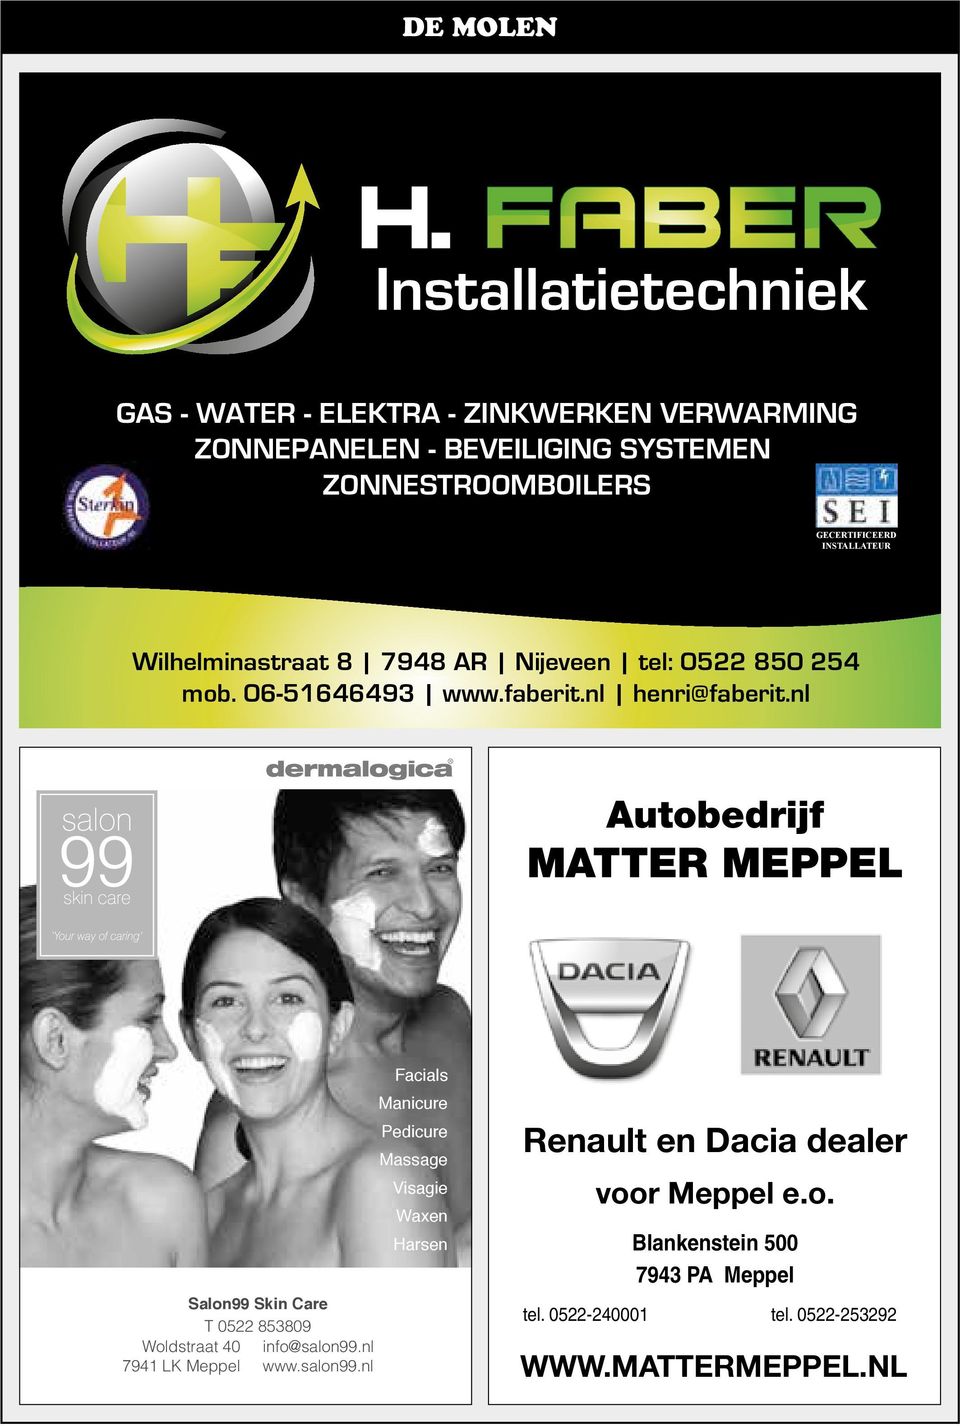 nl Autobedrijf MAtter Meppel Woldstraat 40 7941 LK Meppel Salon99 Skin Care T 0522 853809 info@salon99.